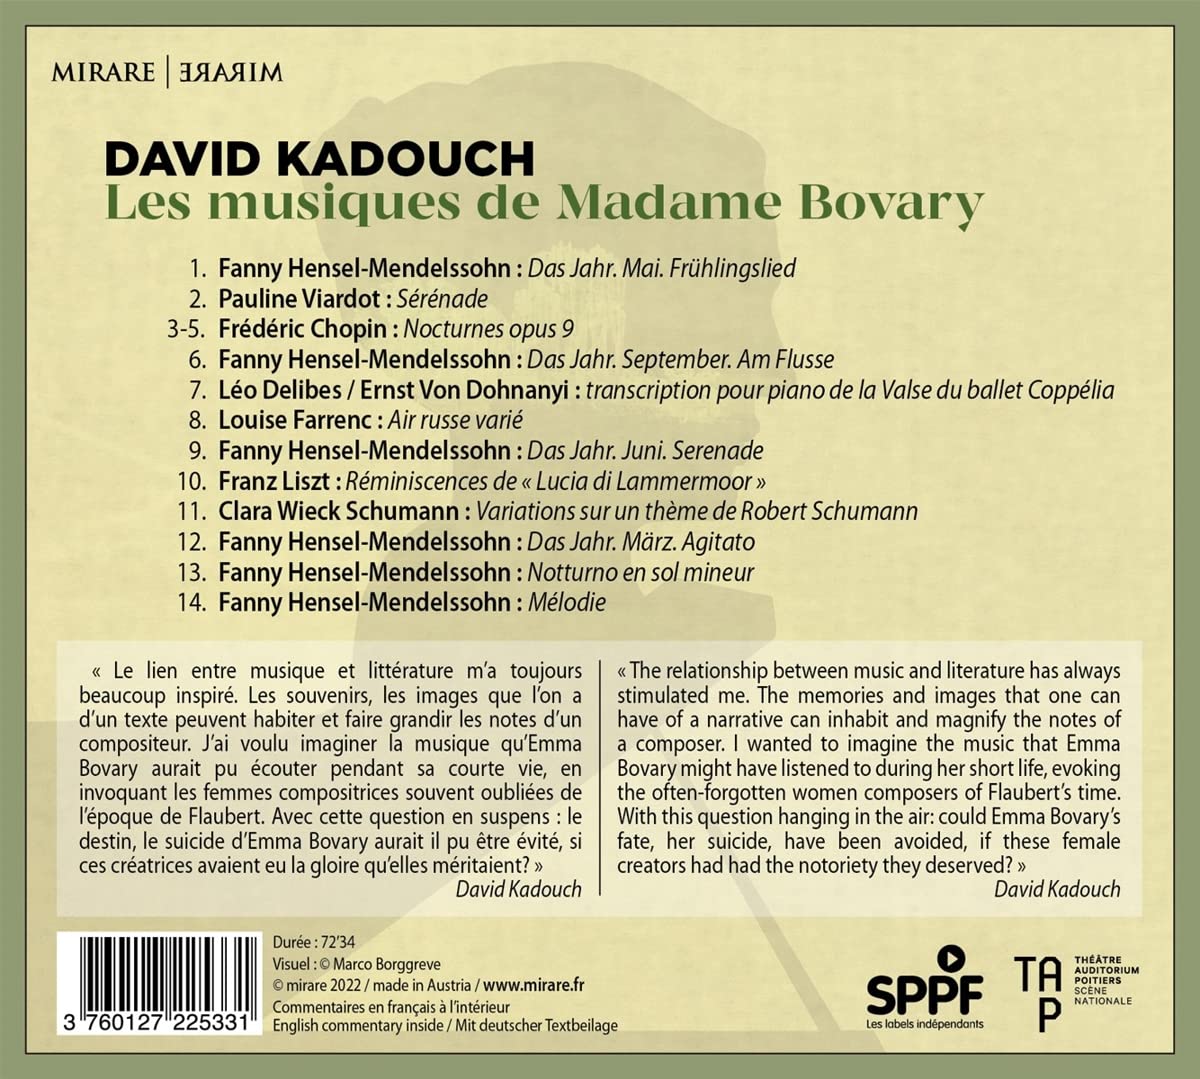 David Kadouch `마담 보바리` 소설을 주제로 한 음악 (Les Musiques De Madame Bovary)